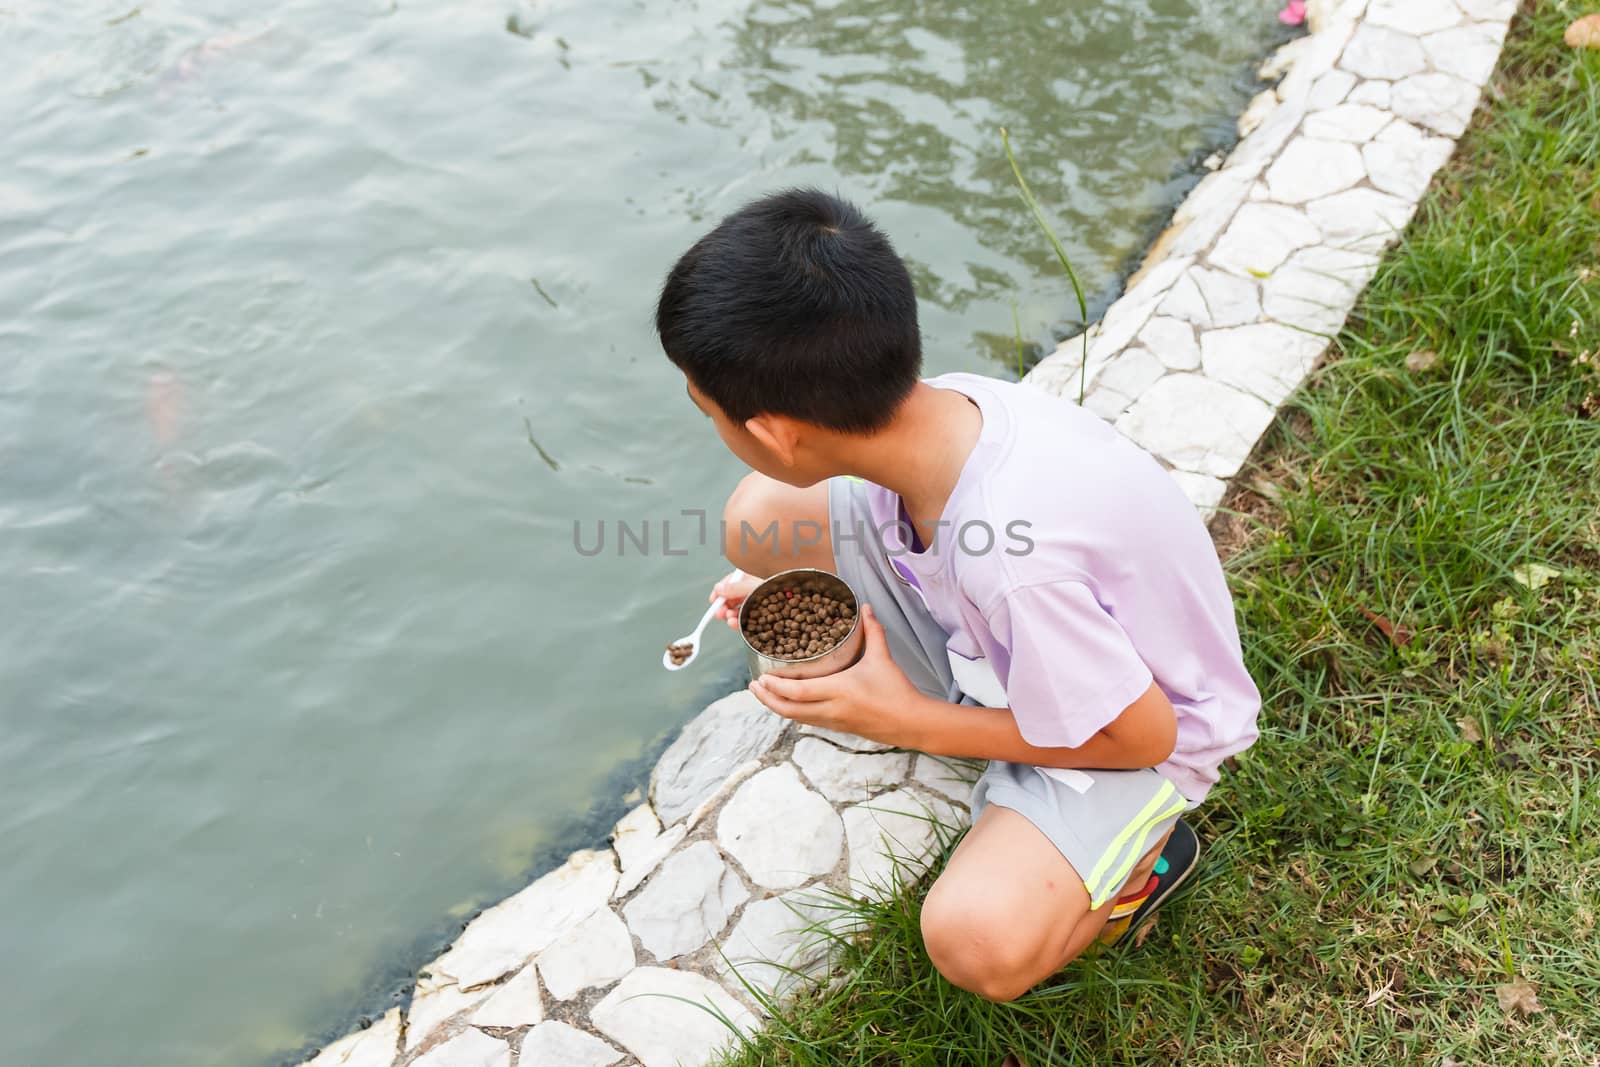 Young Thai boy feeding fish in pond.